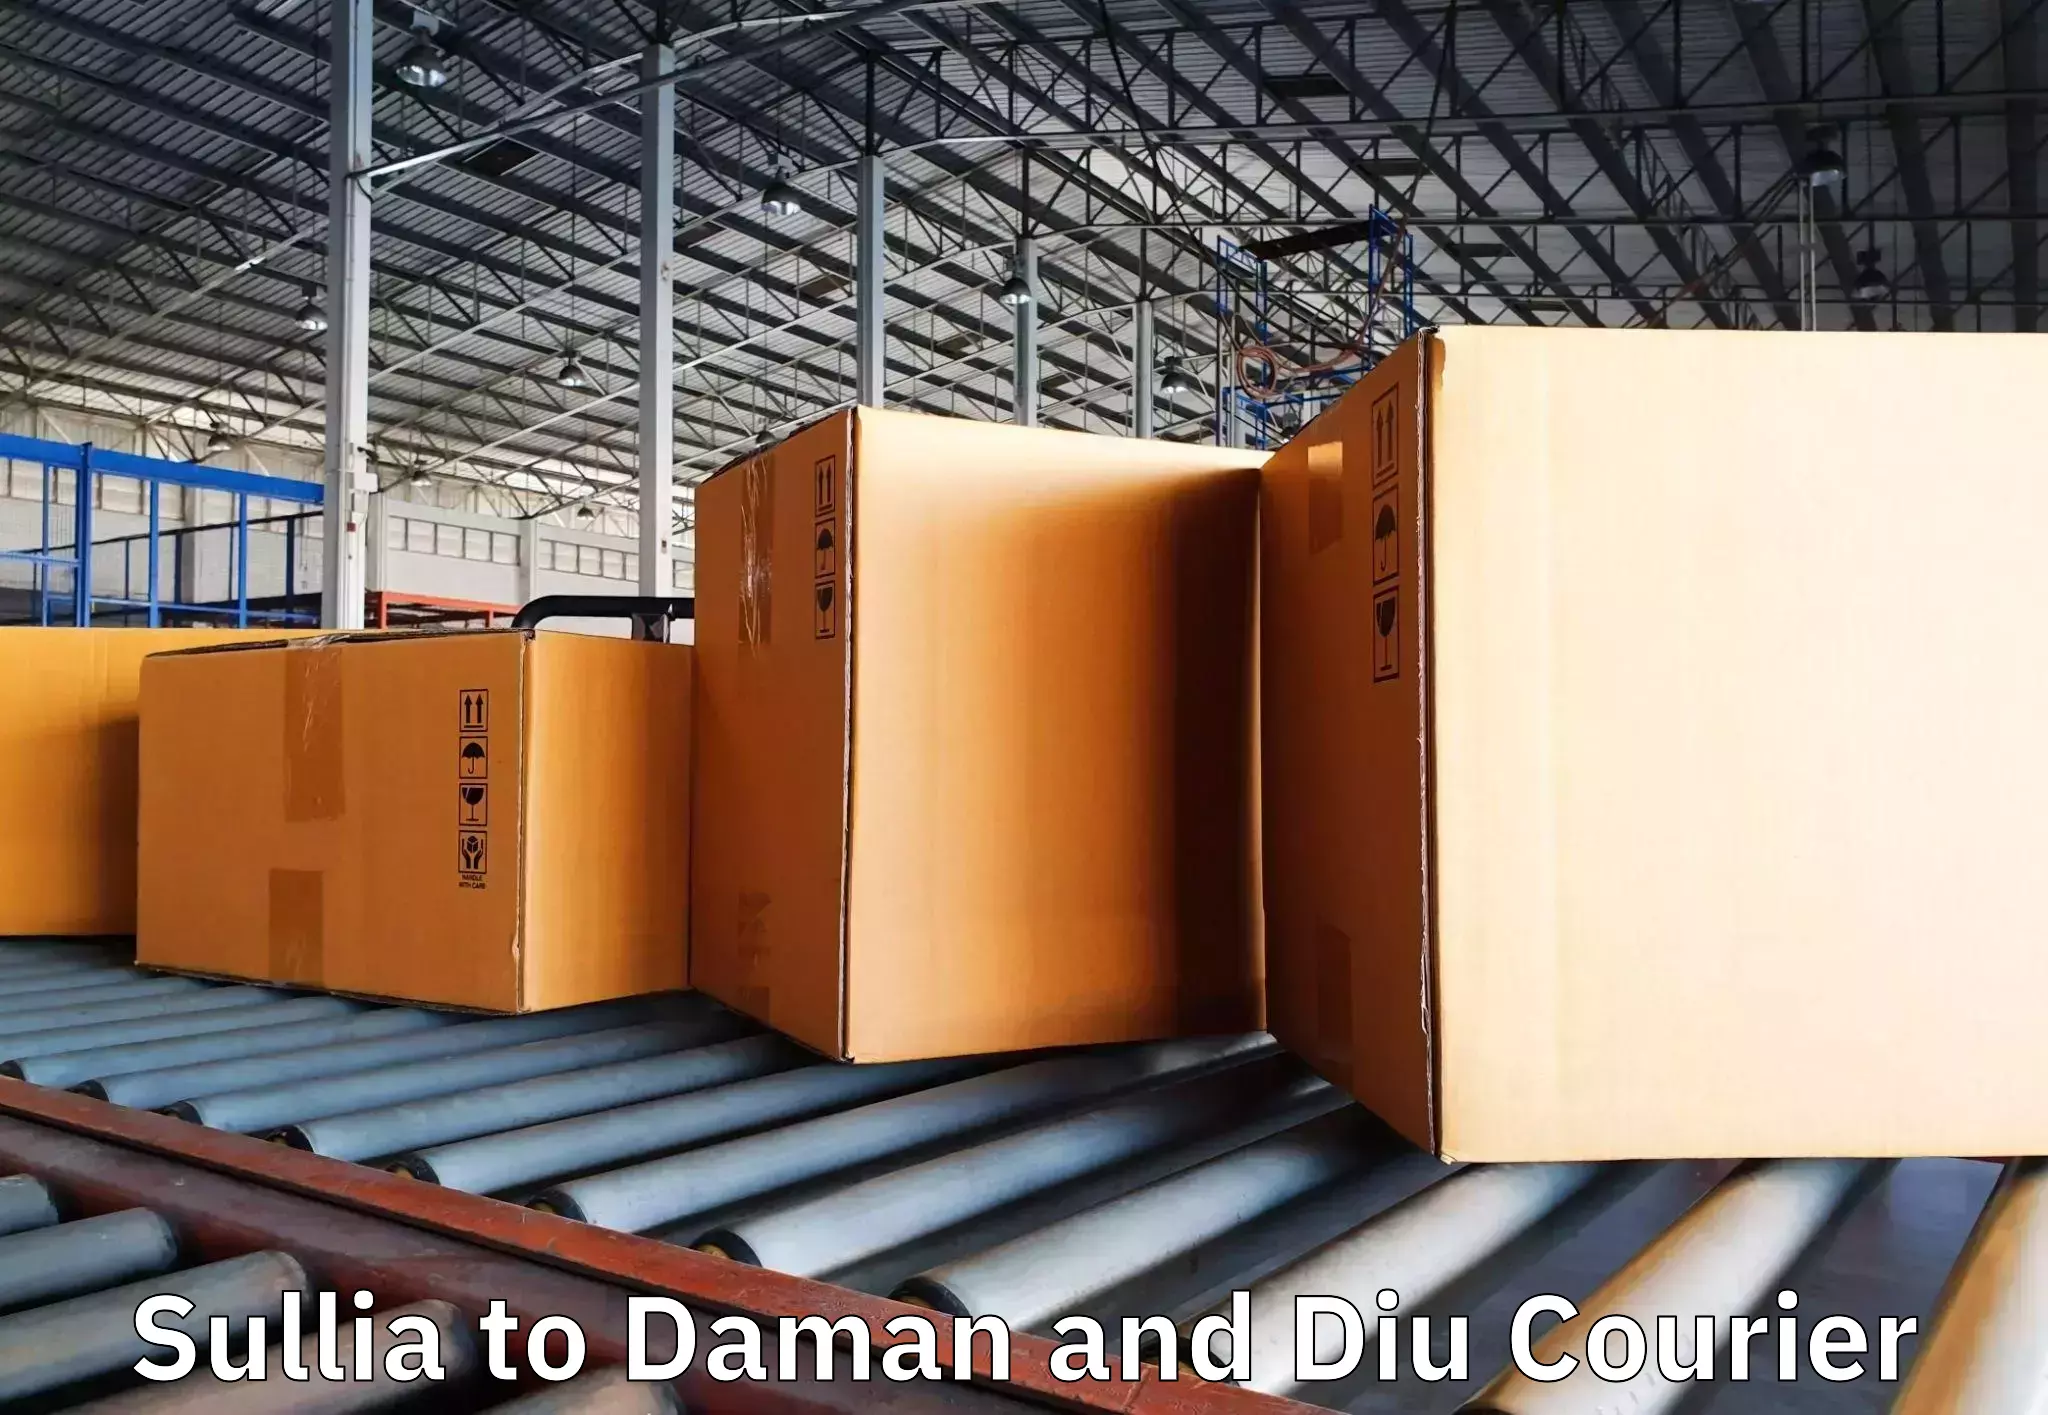 Furniture delivery service Sullia to Daman and Diu